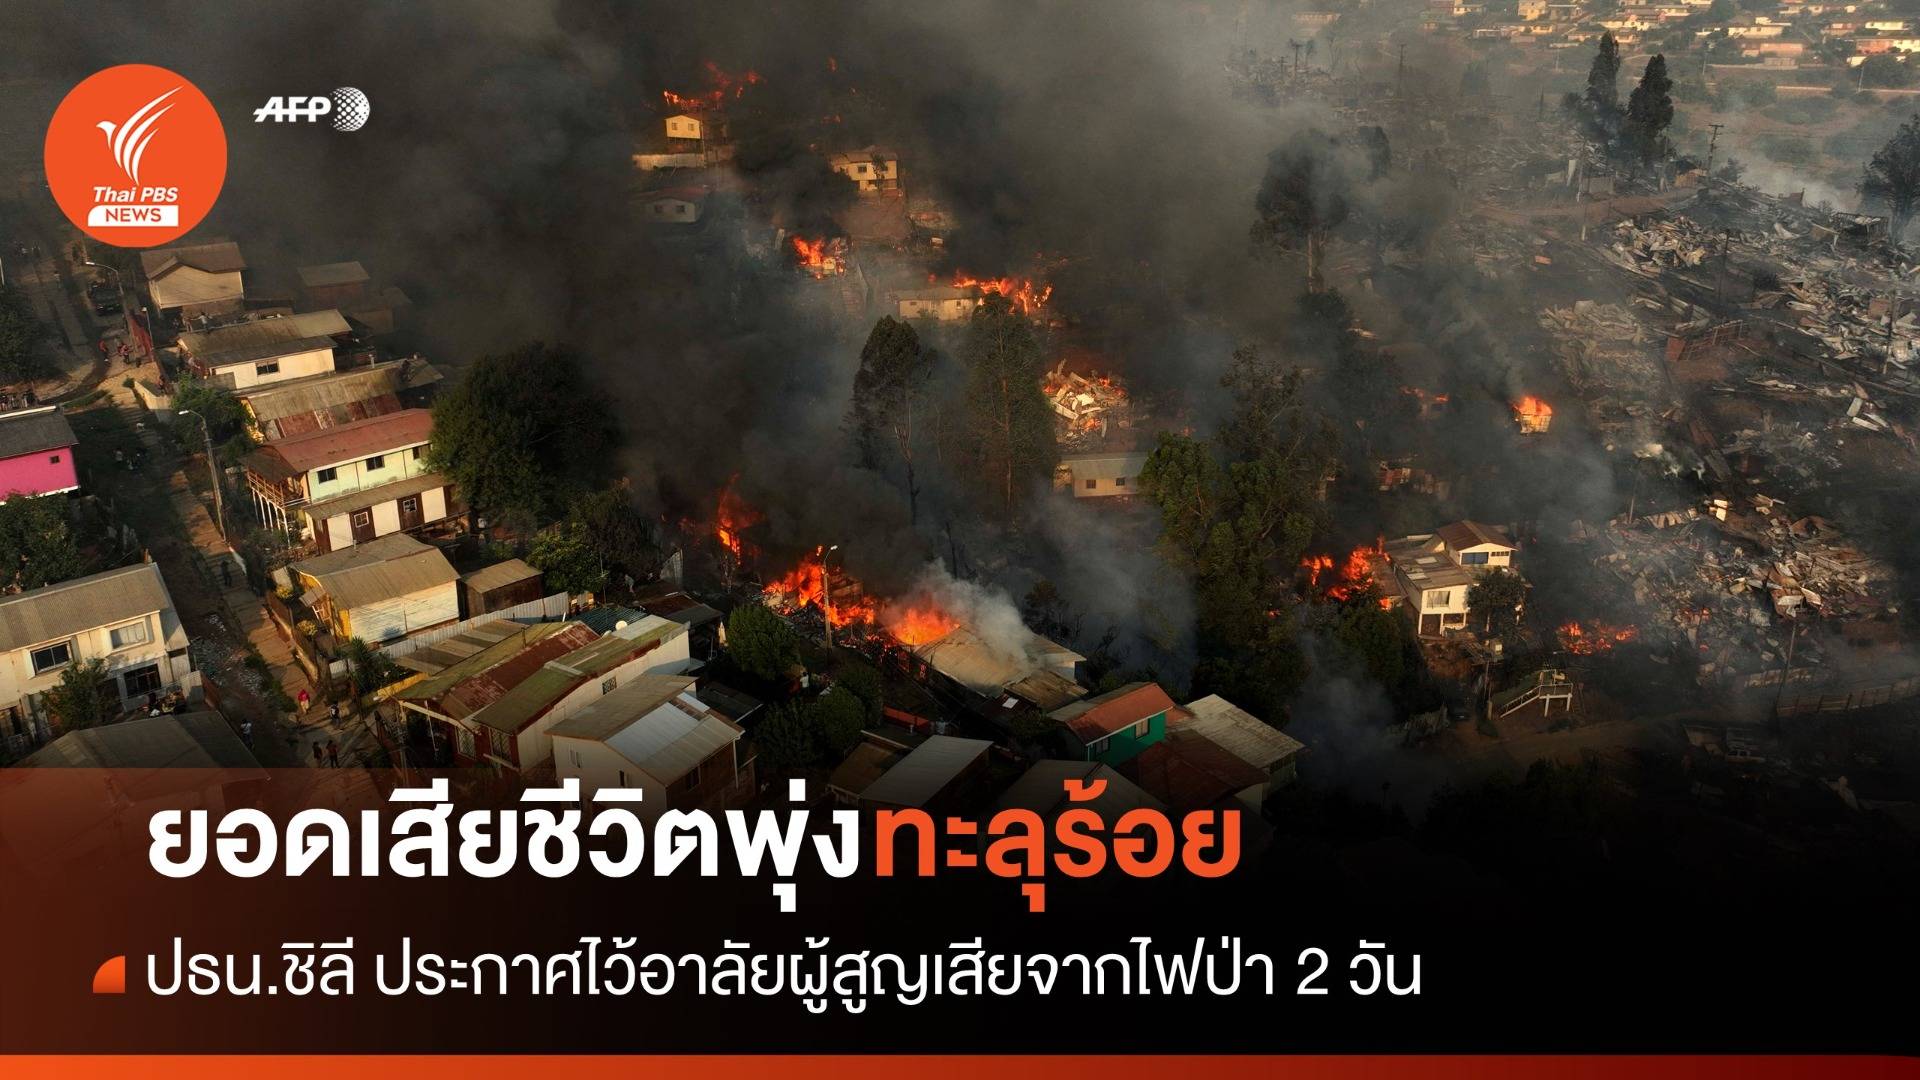 ยอดเสียชีวิตจากไฟป่าพุ่ง 112 คน ปธน.ชิลีประกาศไว้อาลัย 2 วัน